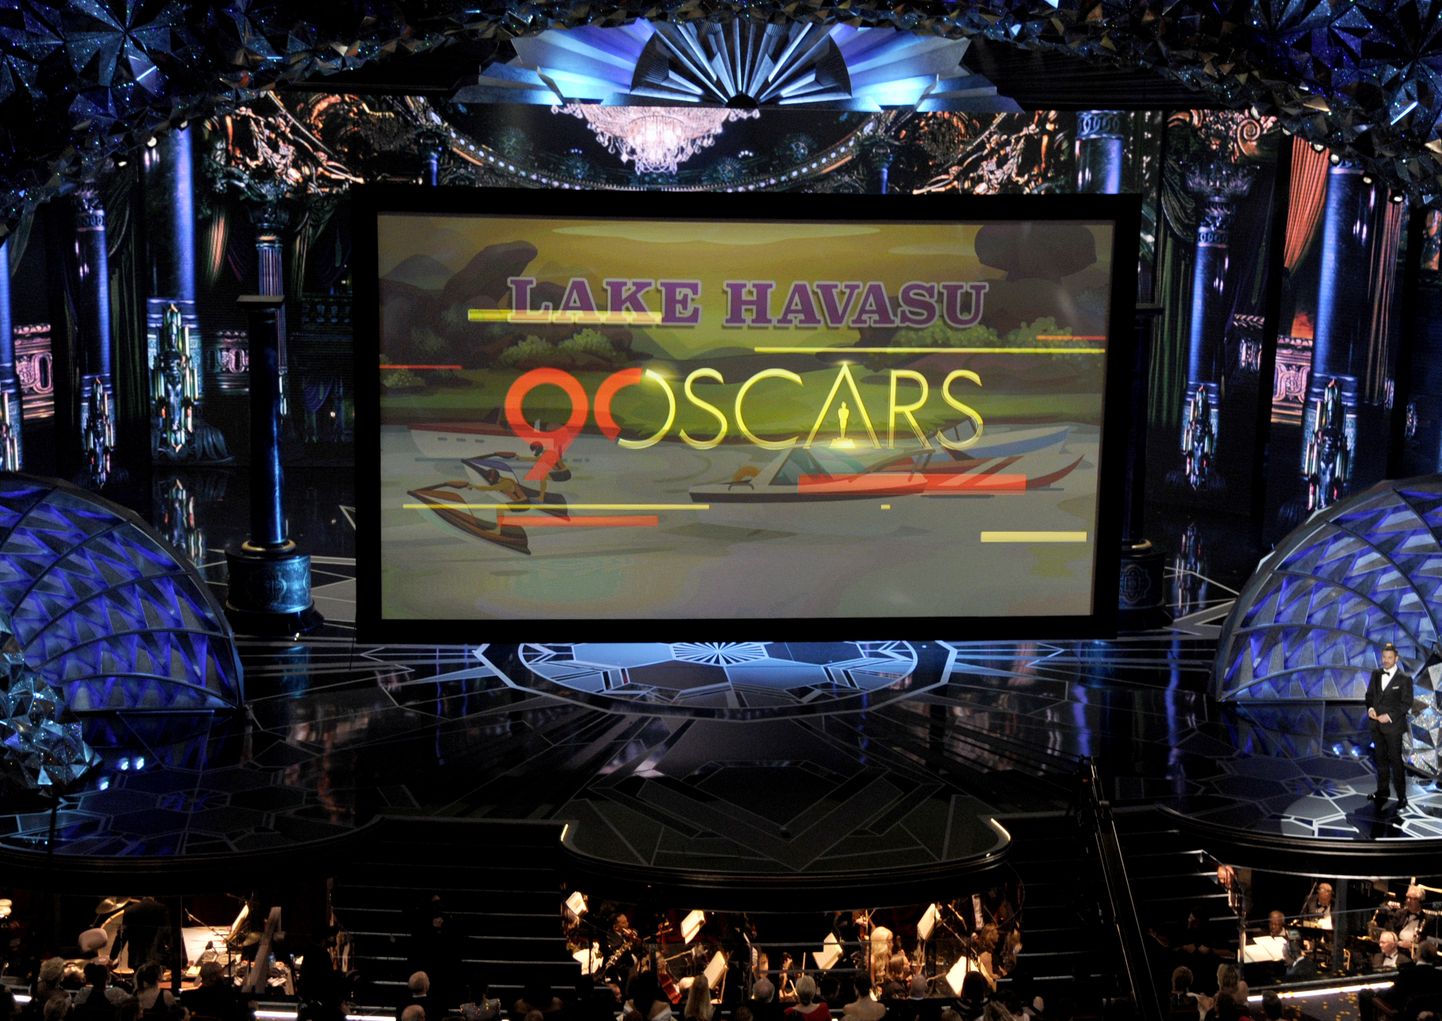 Hollywoodis jagati 90. korda filmiauhindu Oscareid